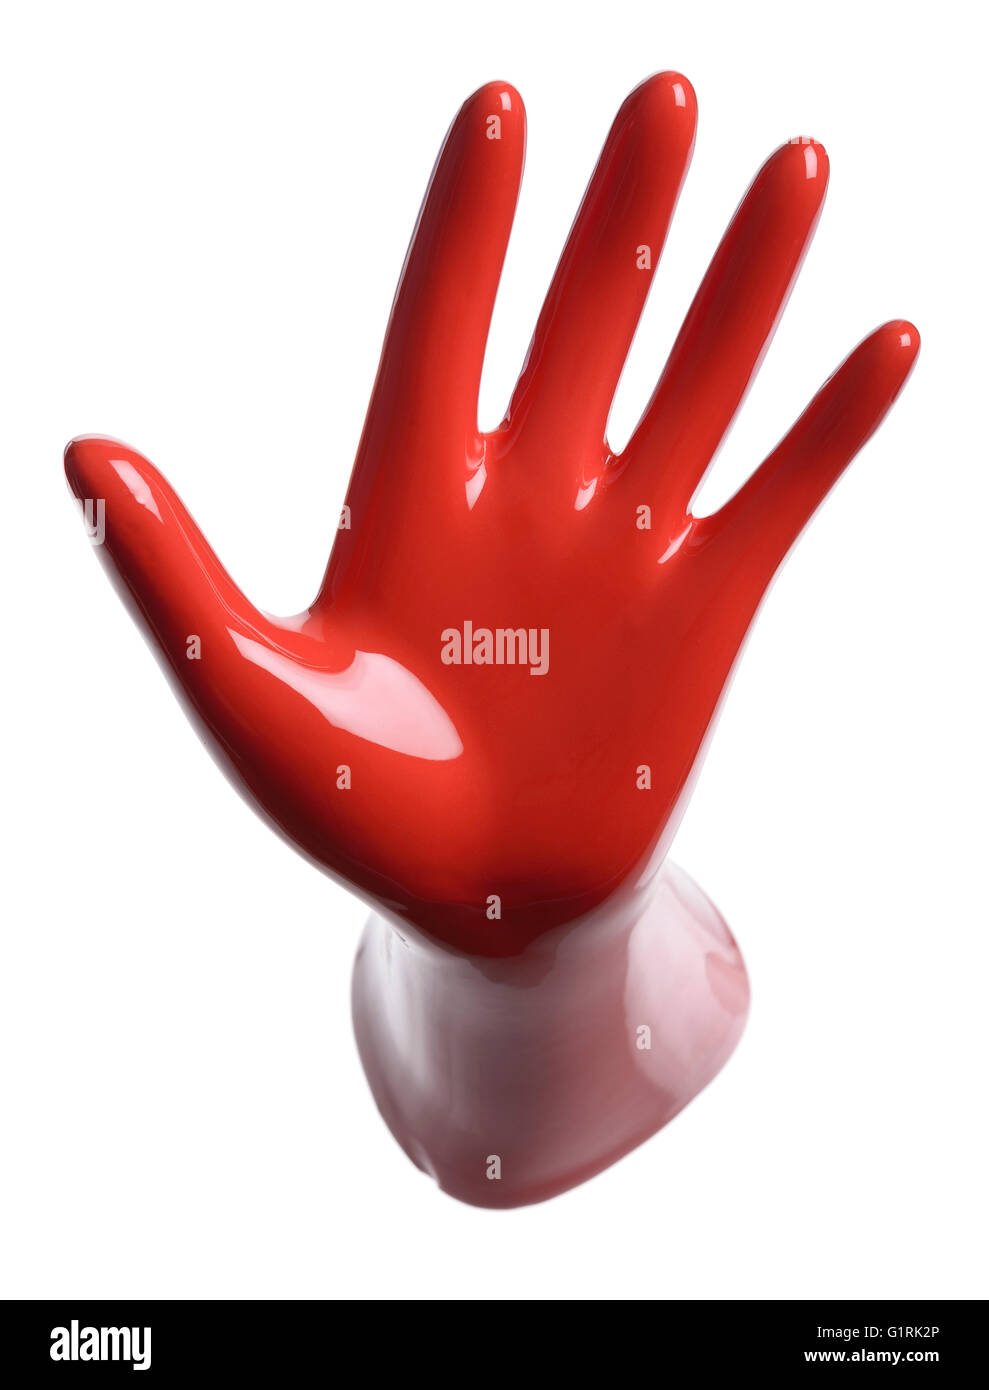 Red ceramic hand Stock Photo